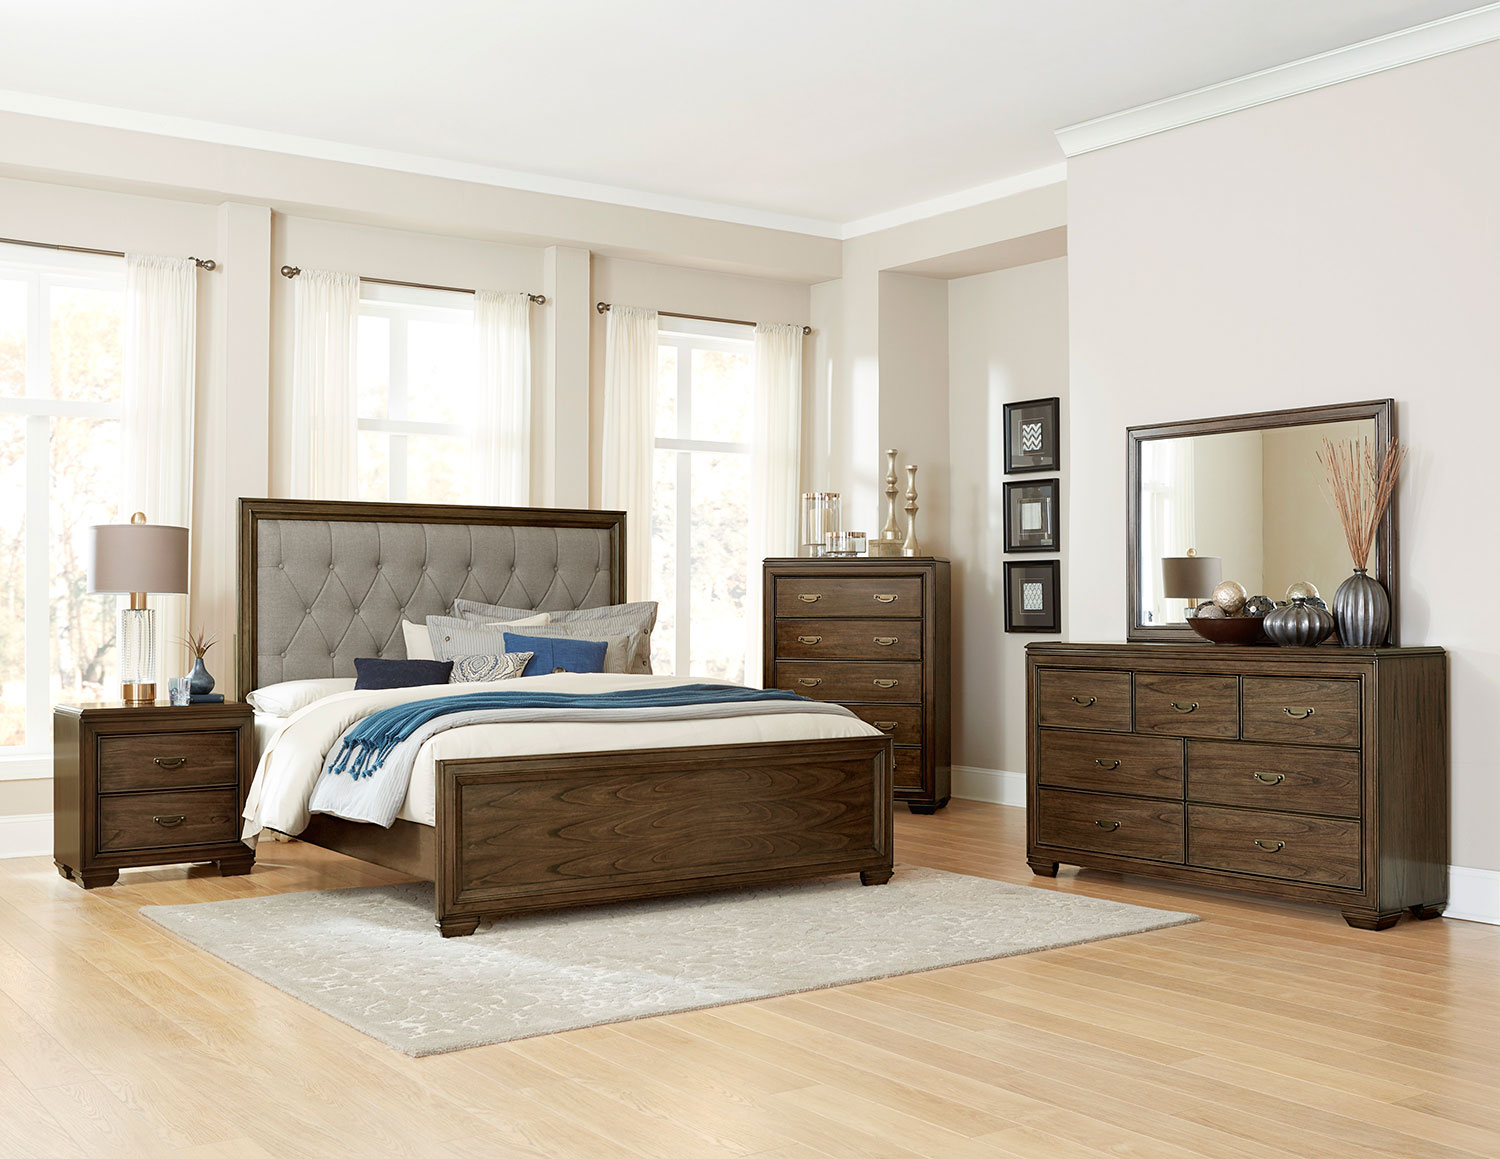 Homelegance Leavitt Button Tufted Upholstered Bedroom Set - Brown Cherry